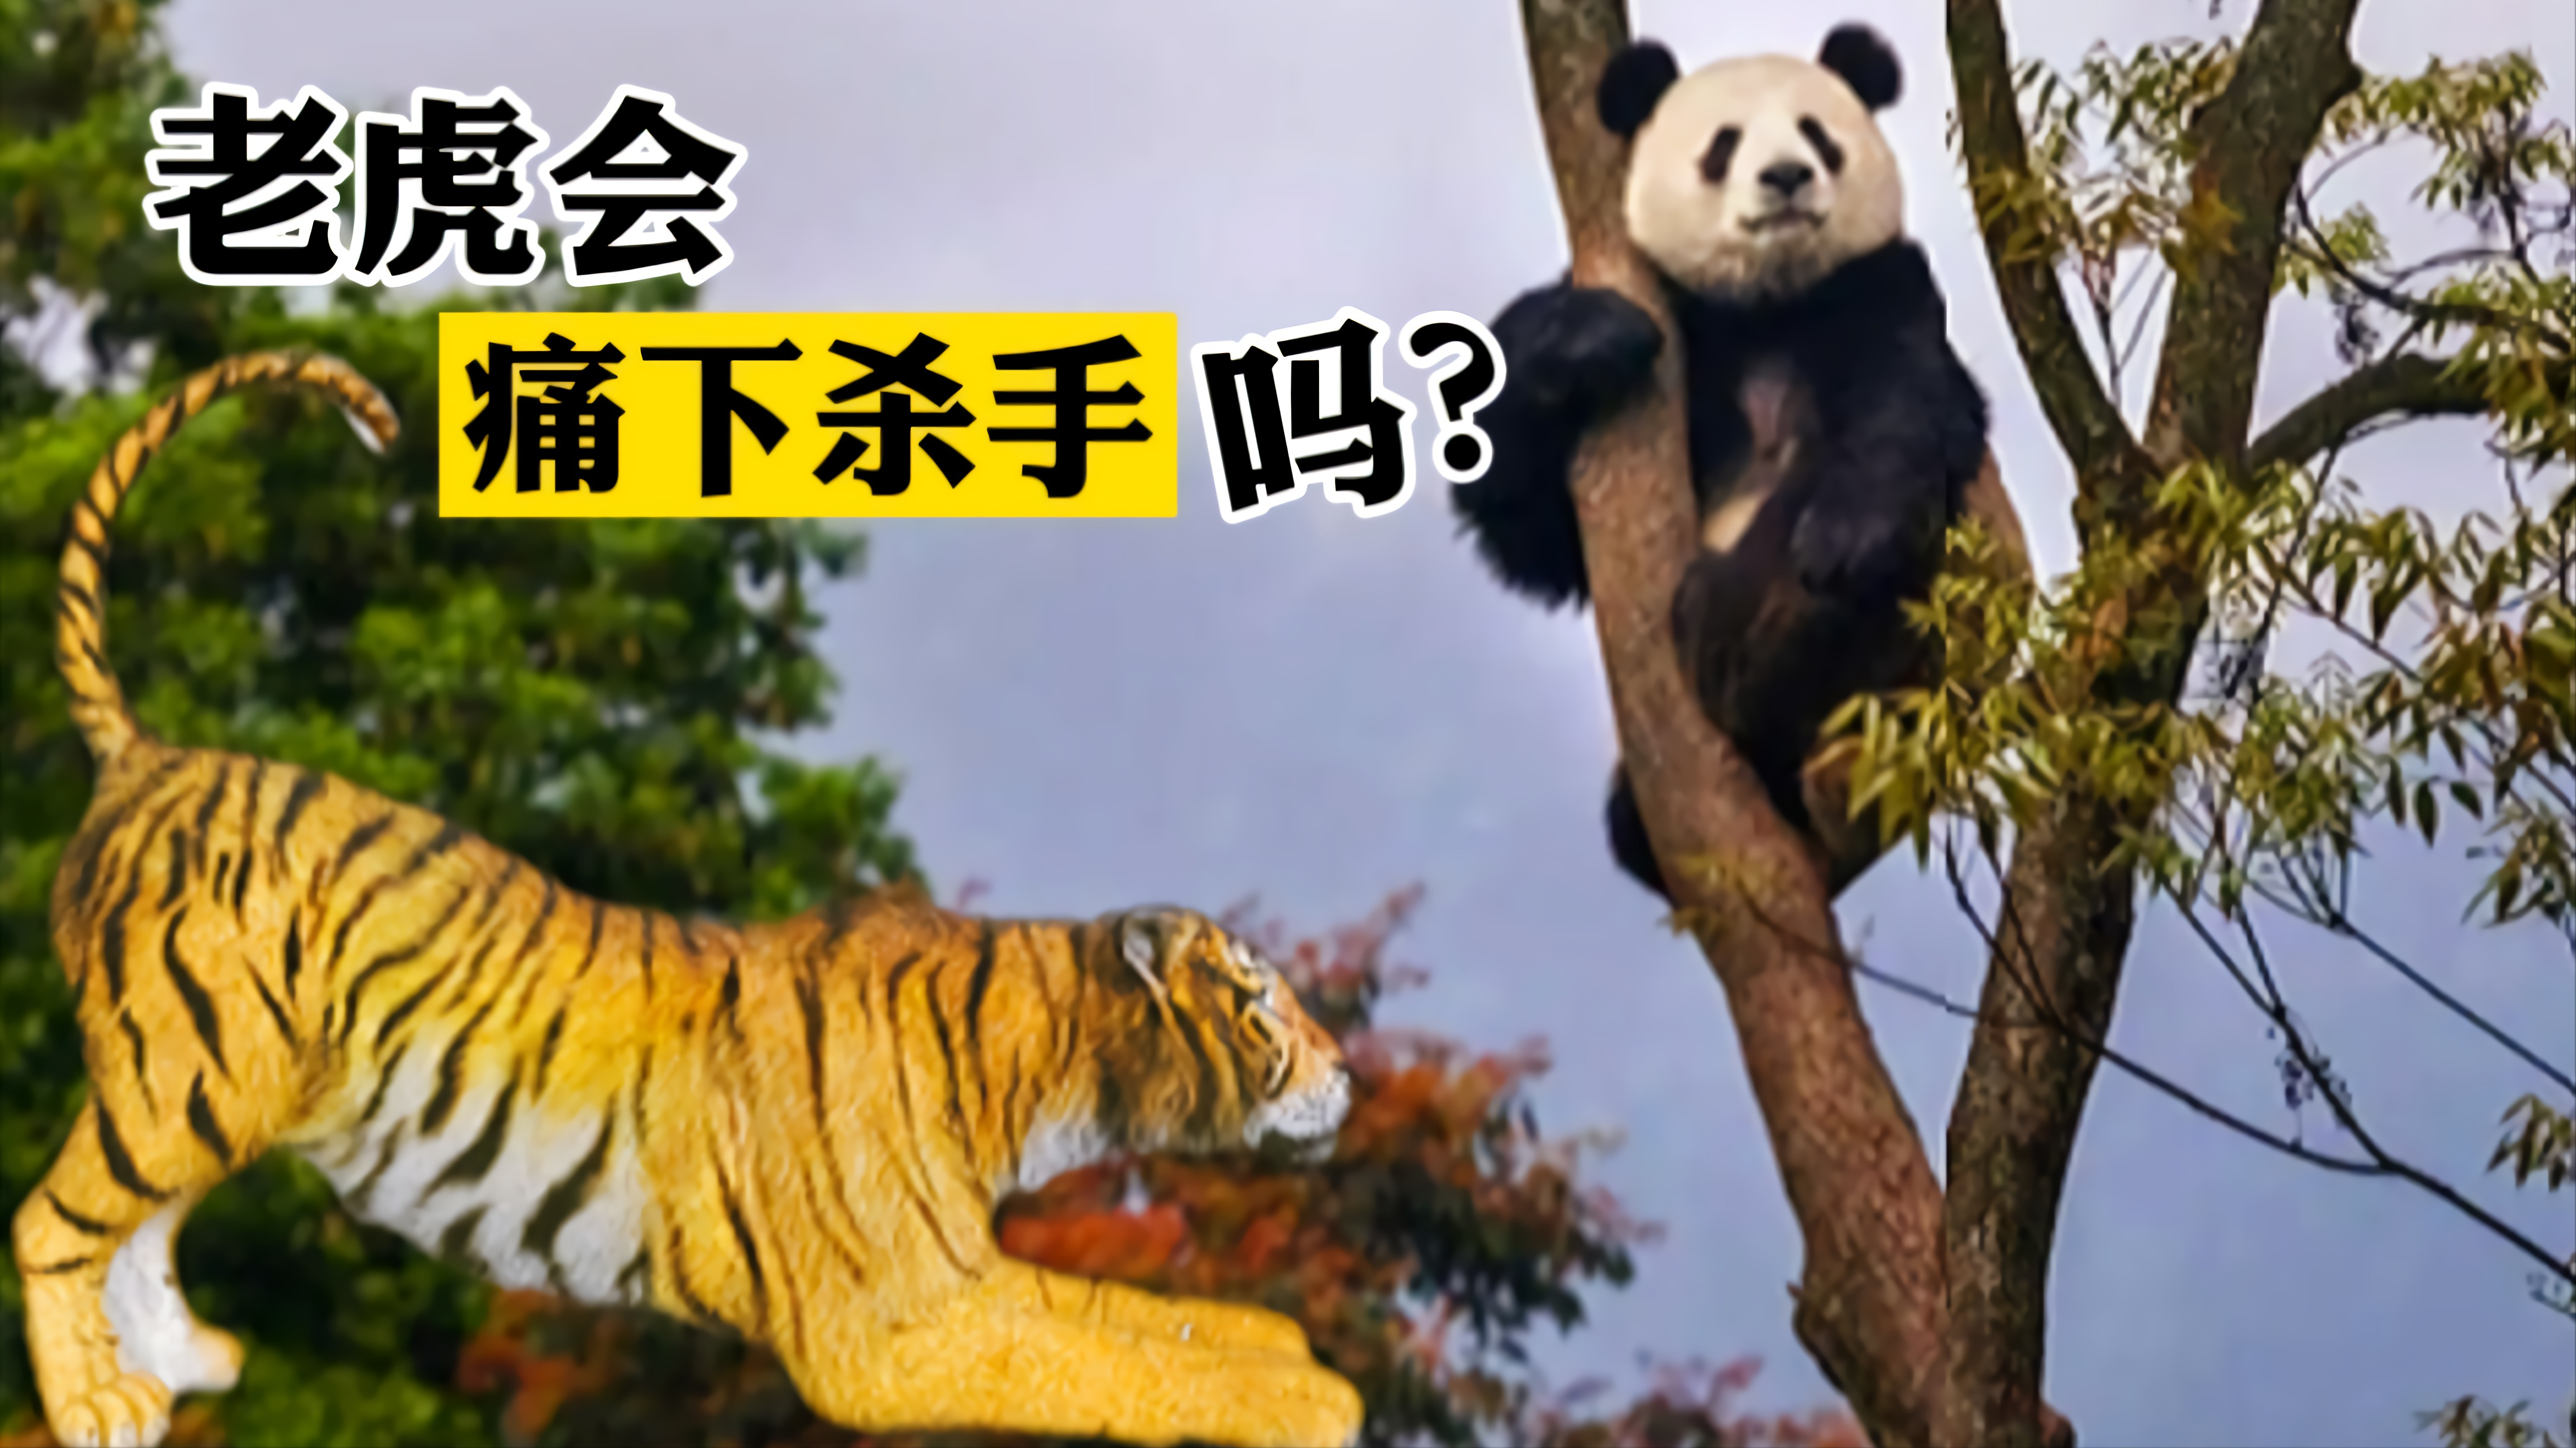 老虎在野外遇到熊猫会不会痛下杀手？熊猫有机会虎口脱险吗？